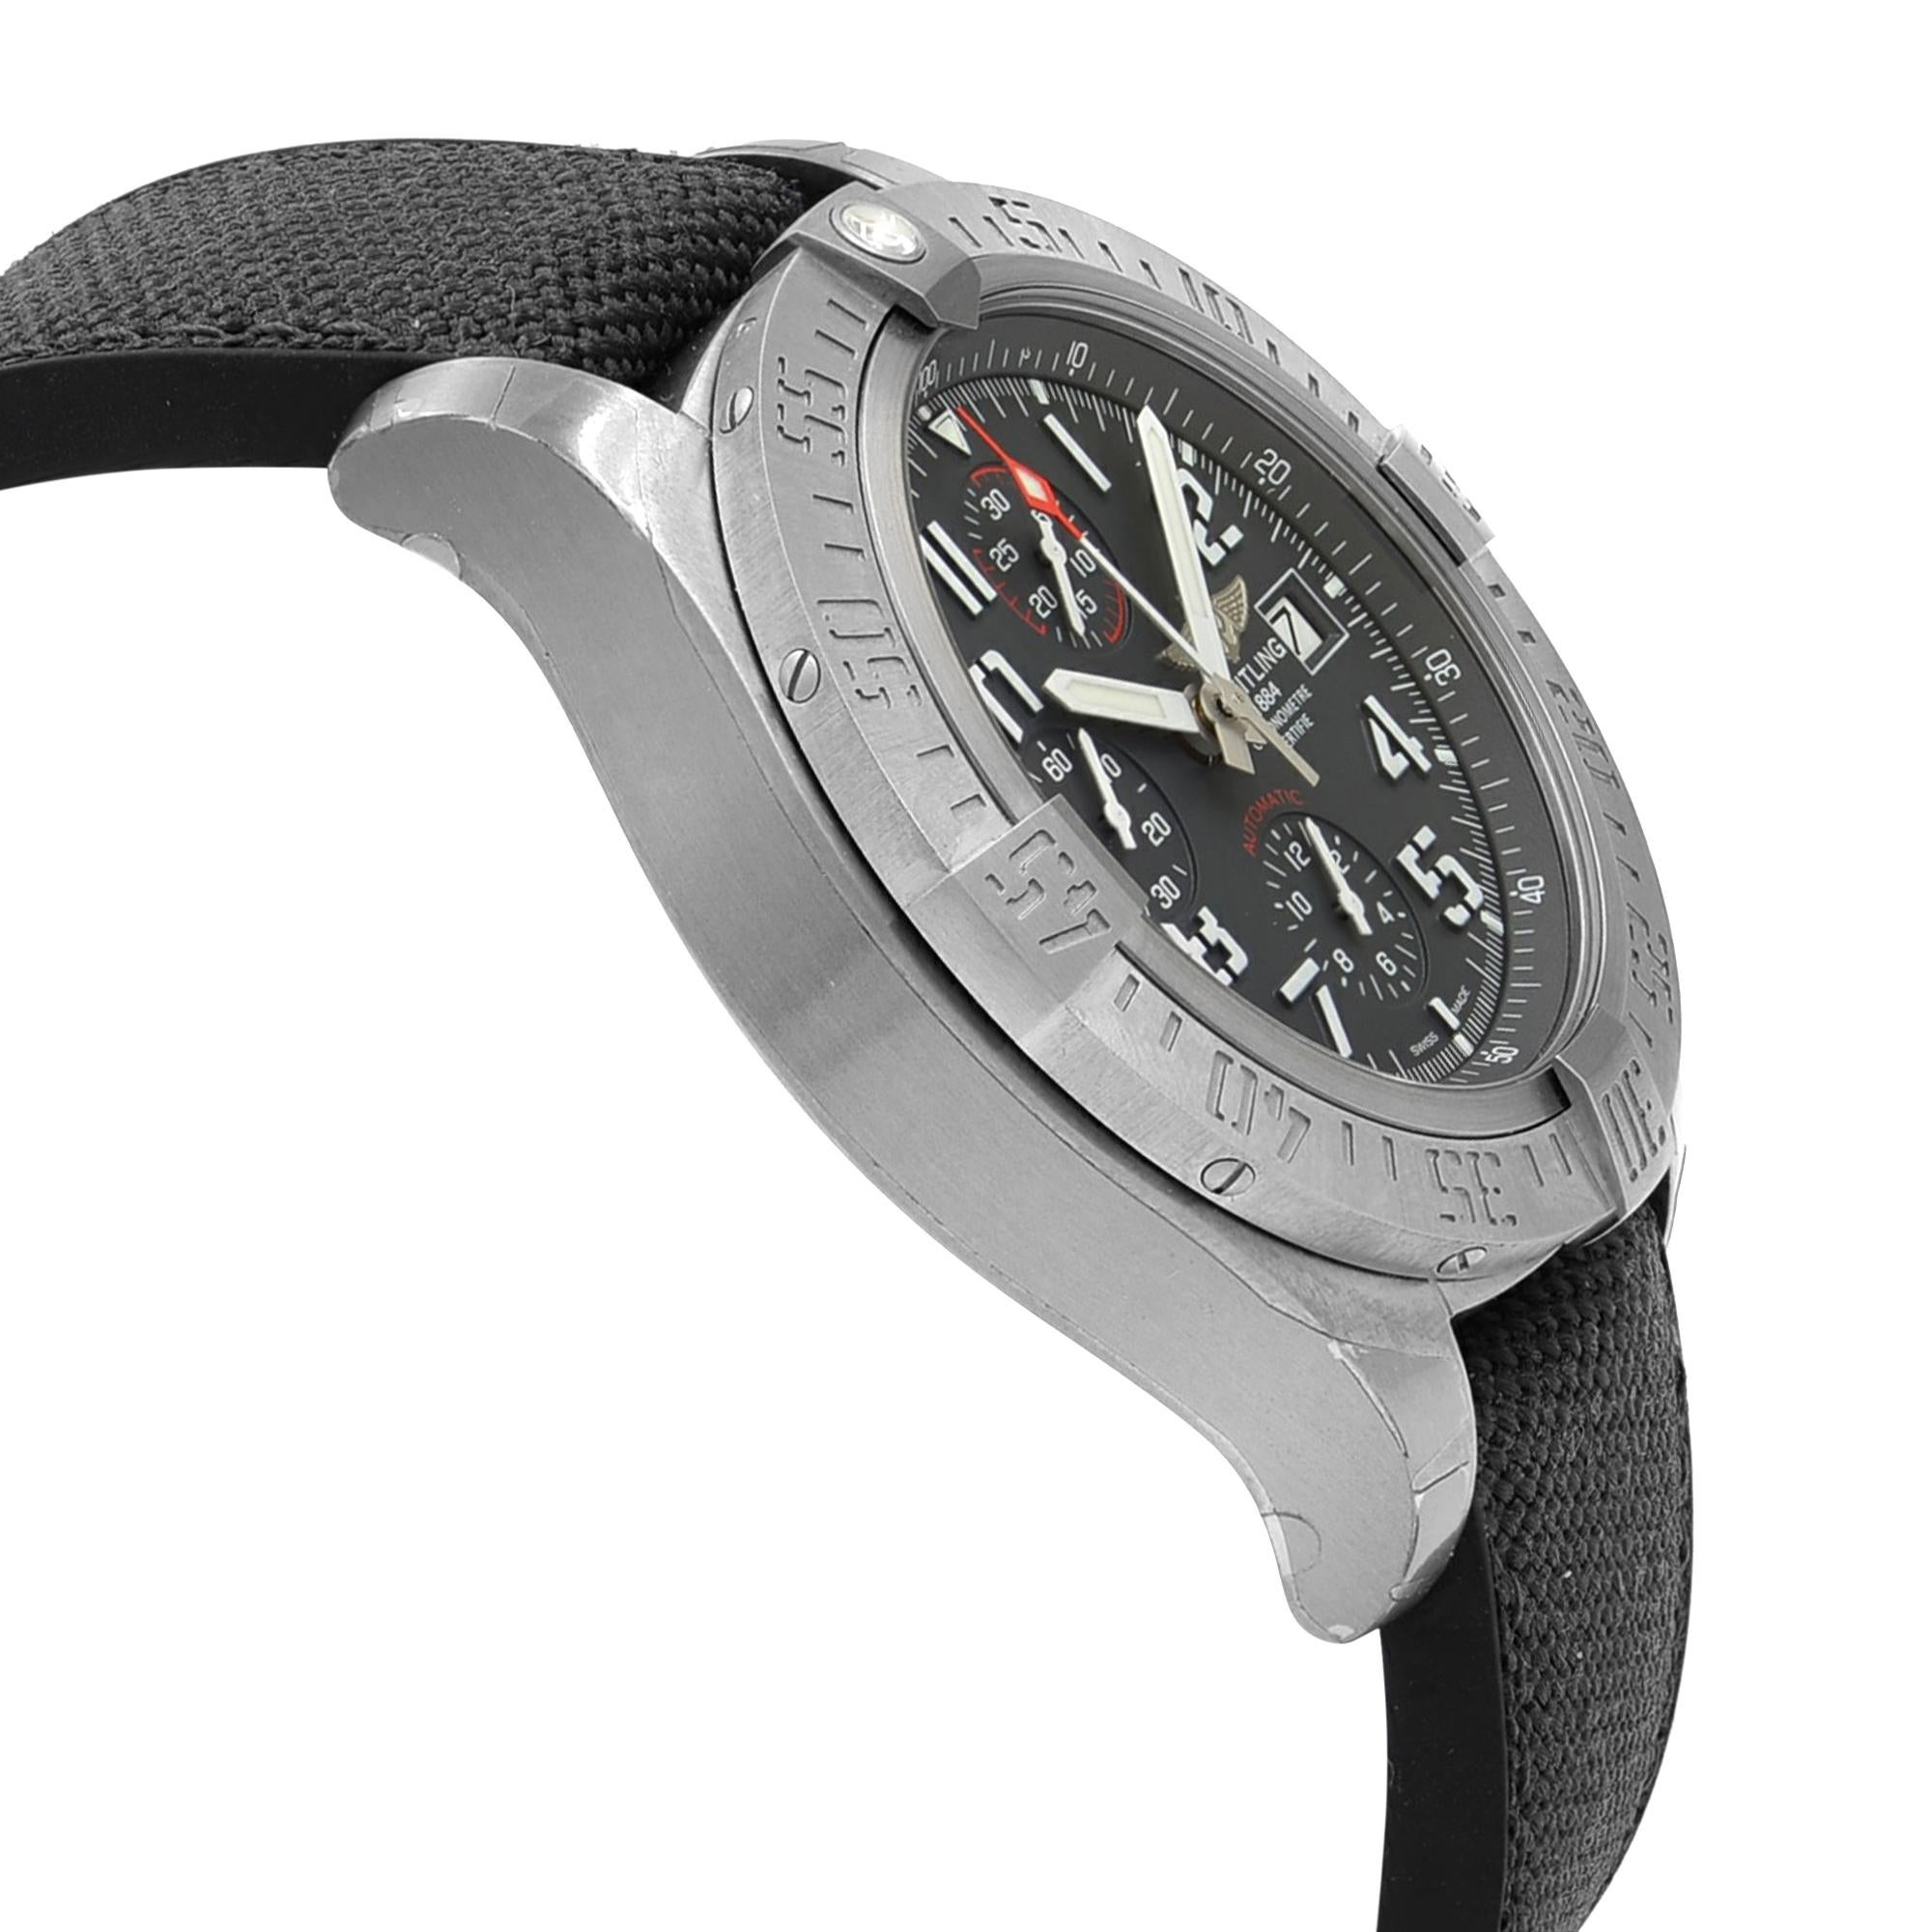 Breitling Avenger Bandit Titanium Grey Dial Men's Watch E1338310/M536-253S 1